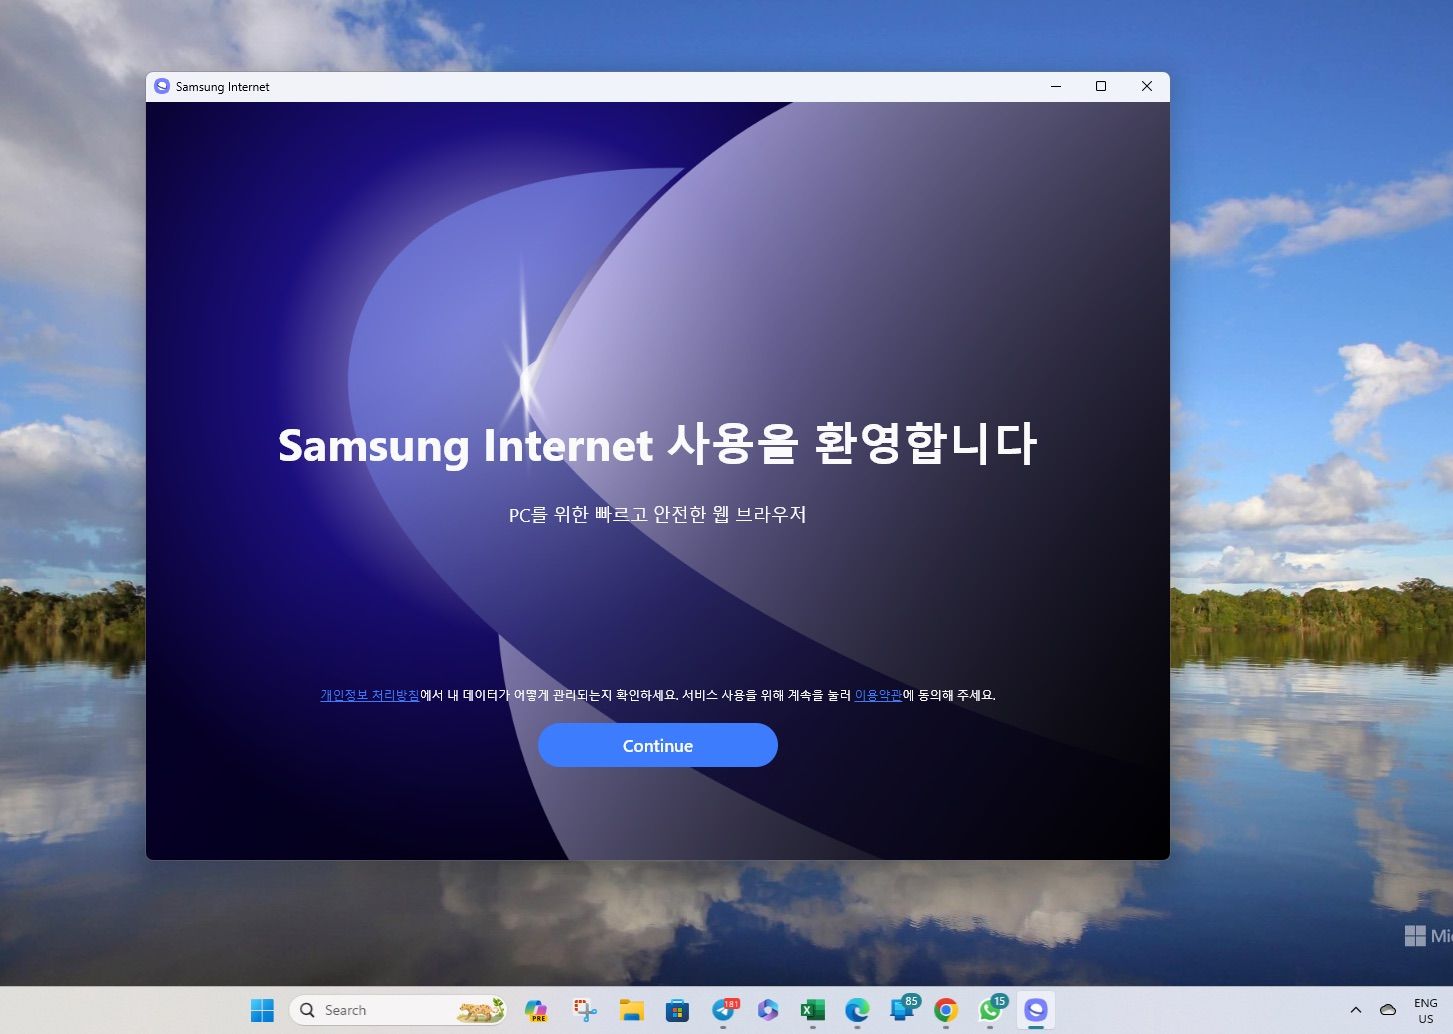 Samsung Internet para Windows - Tela inicial